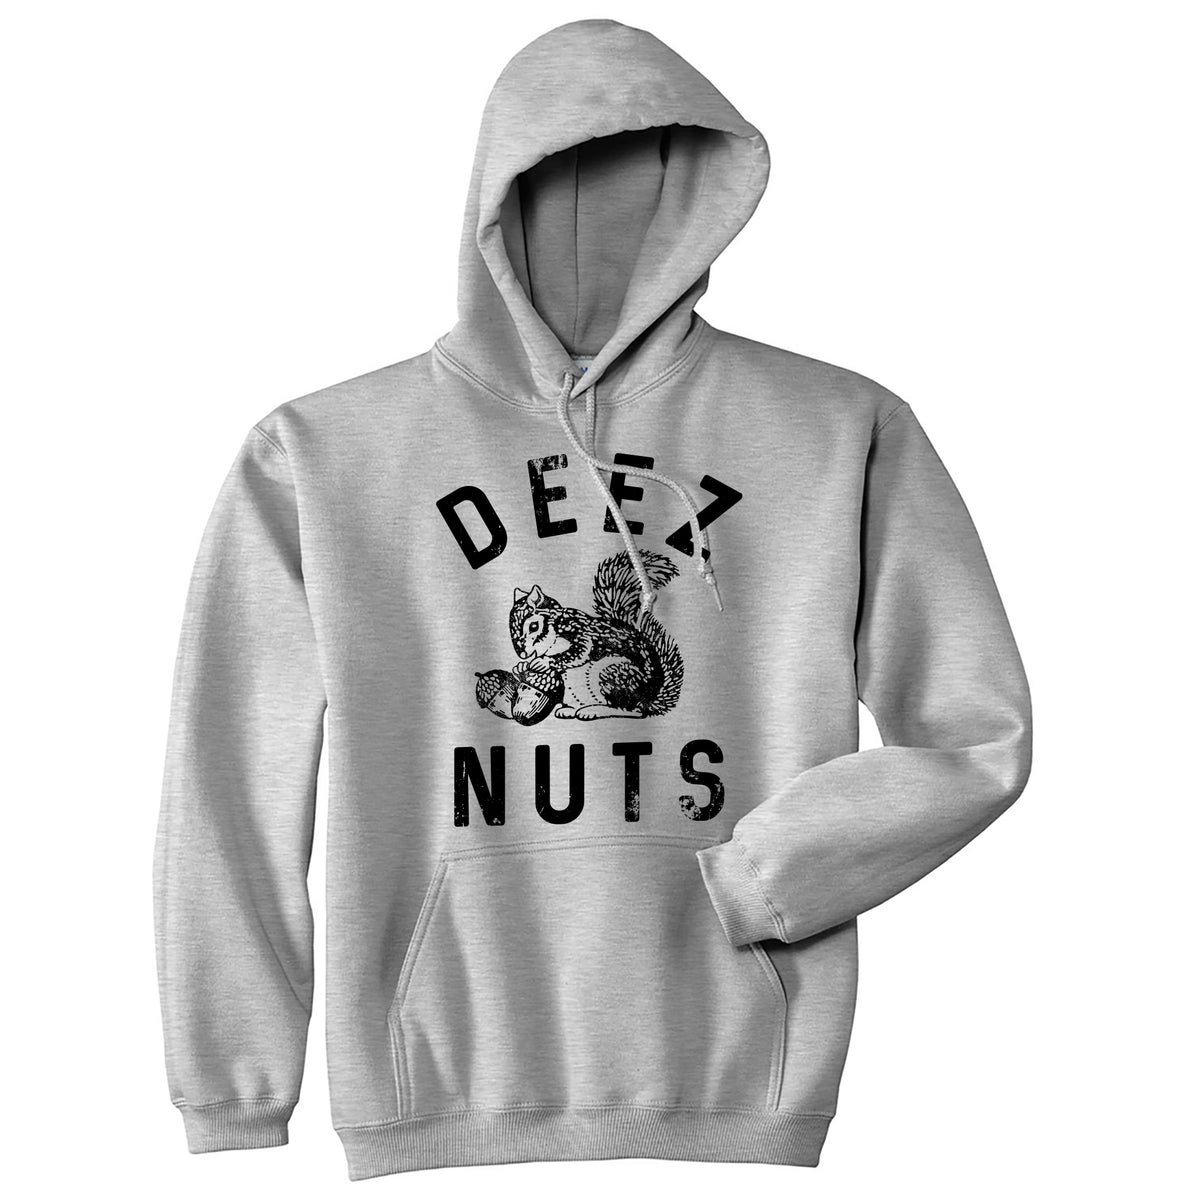 Funny Light Heather Grey - Deez Nuts Deez Nuts Squirrel Hoodie Nerdy Sarcastic Tee